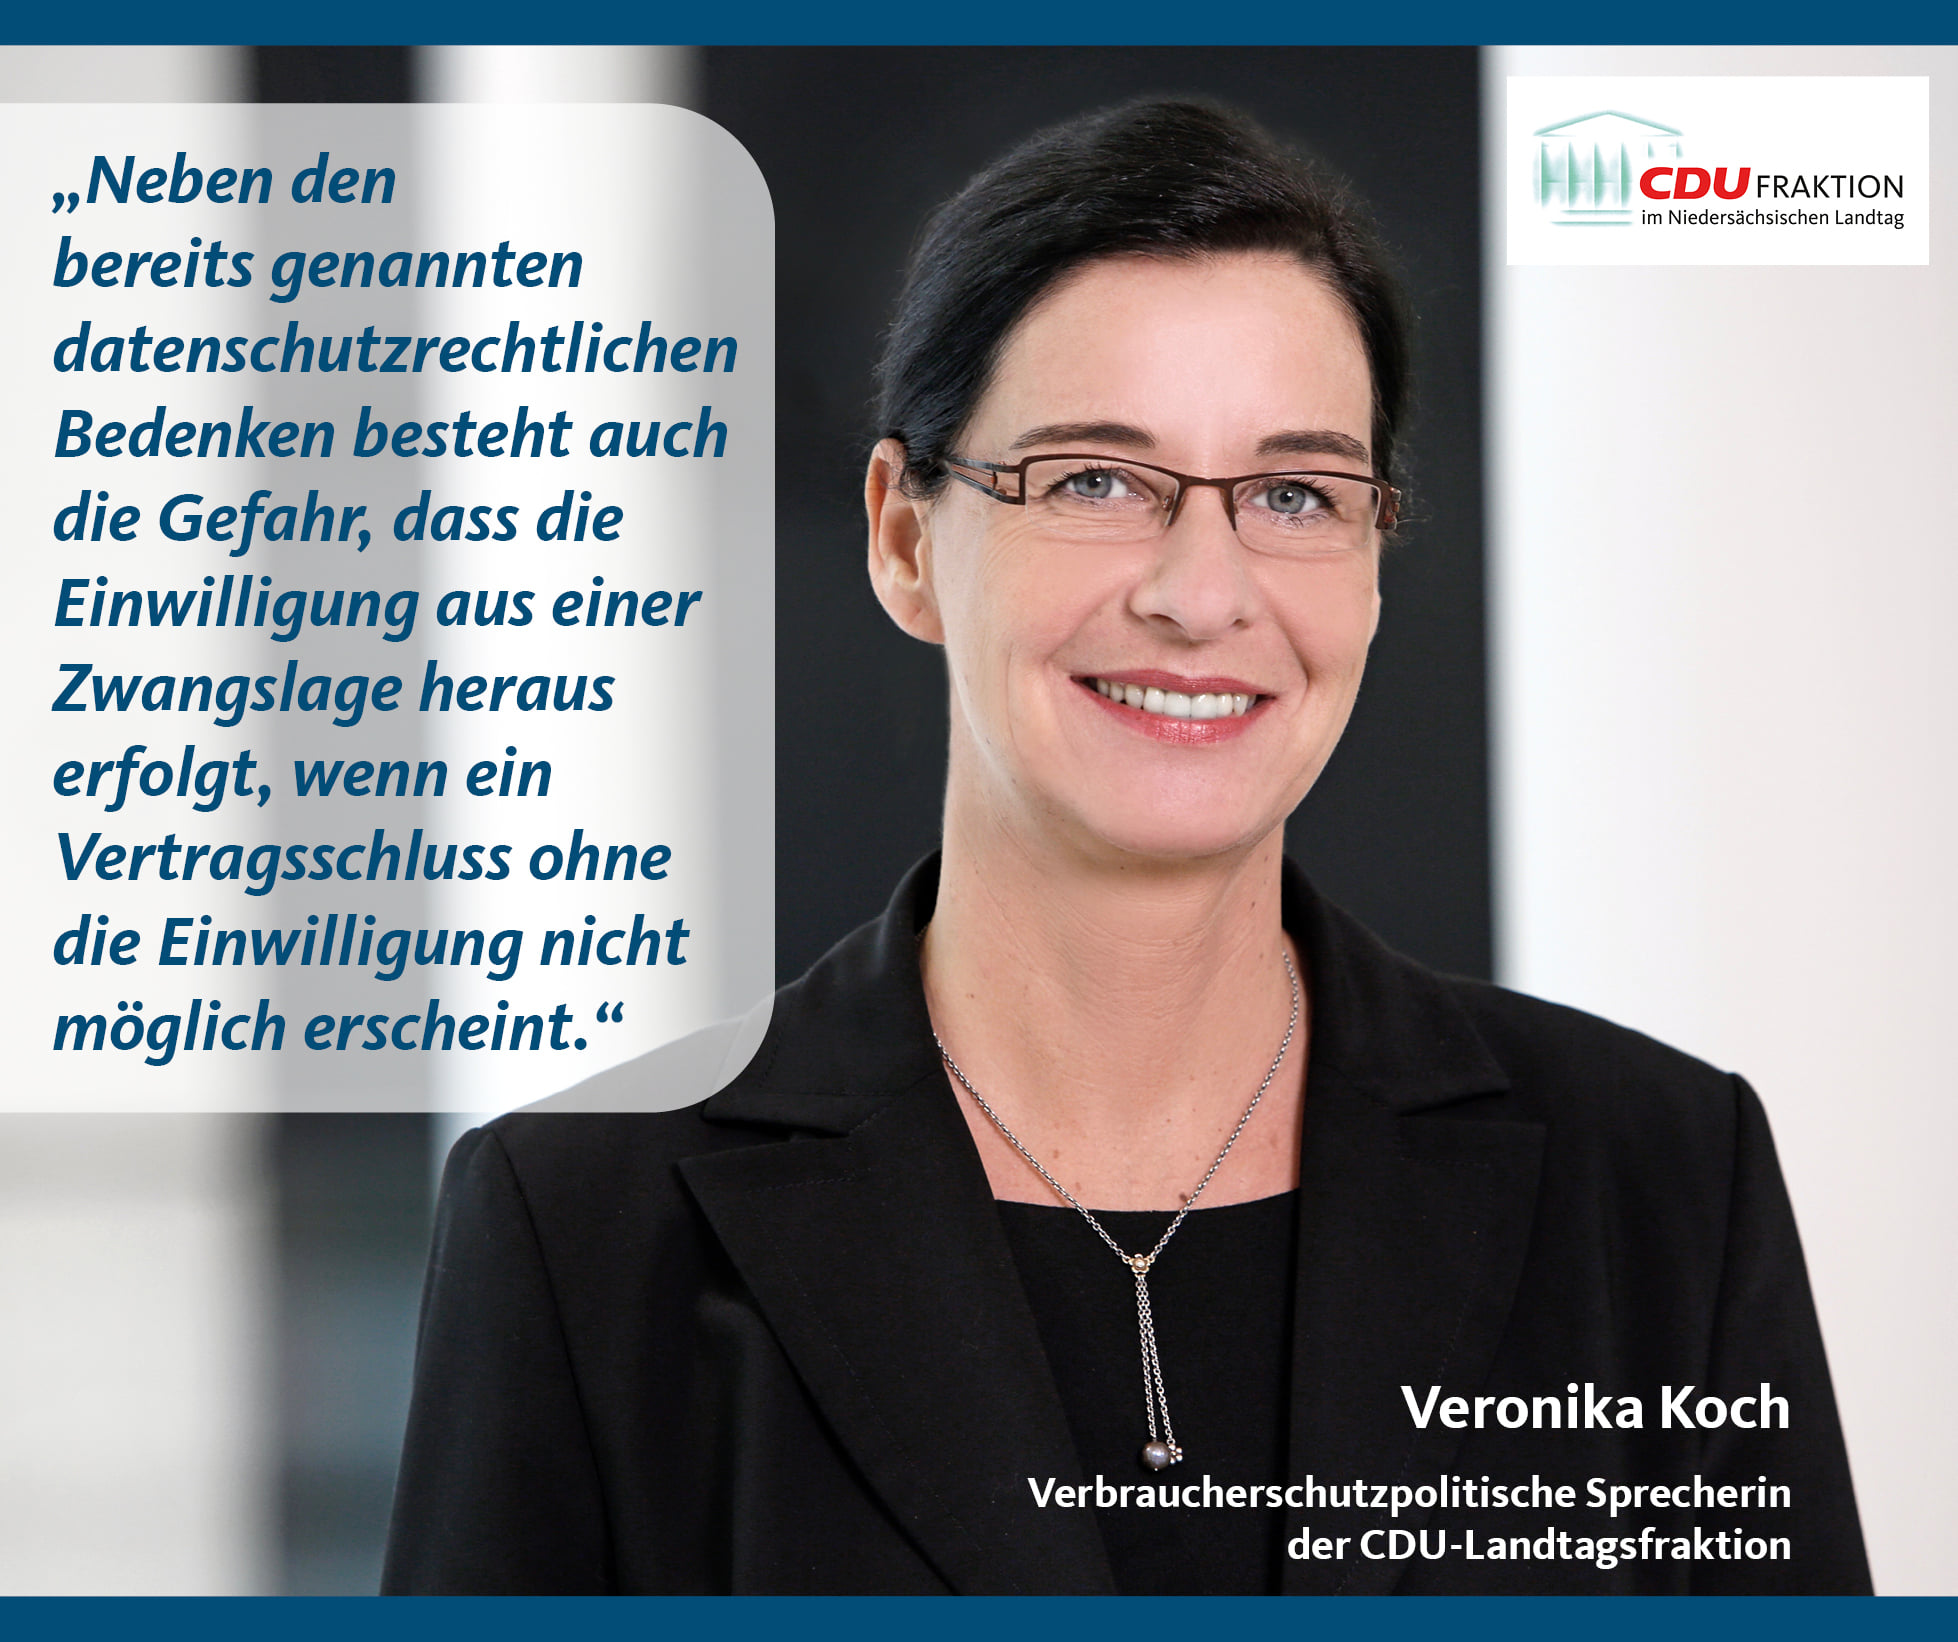 Veronika Koch MdL äußert sich als verbraucherschutzpolitische Sprecherin der CDU.